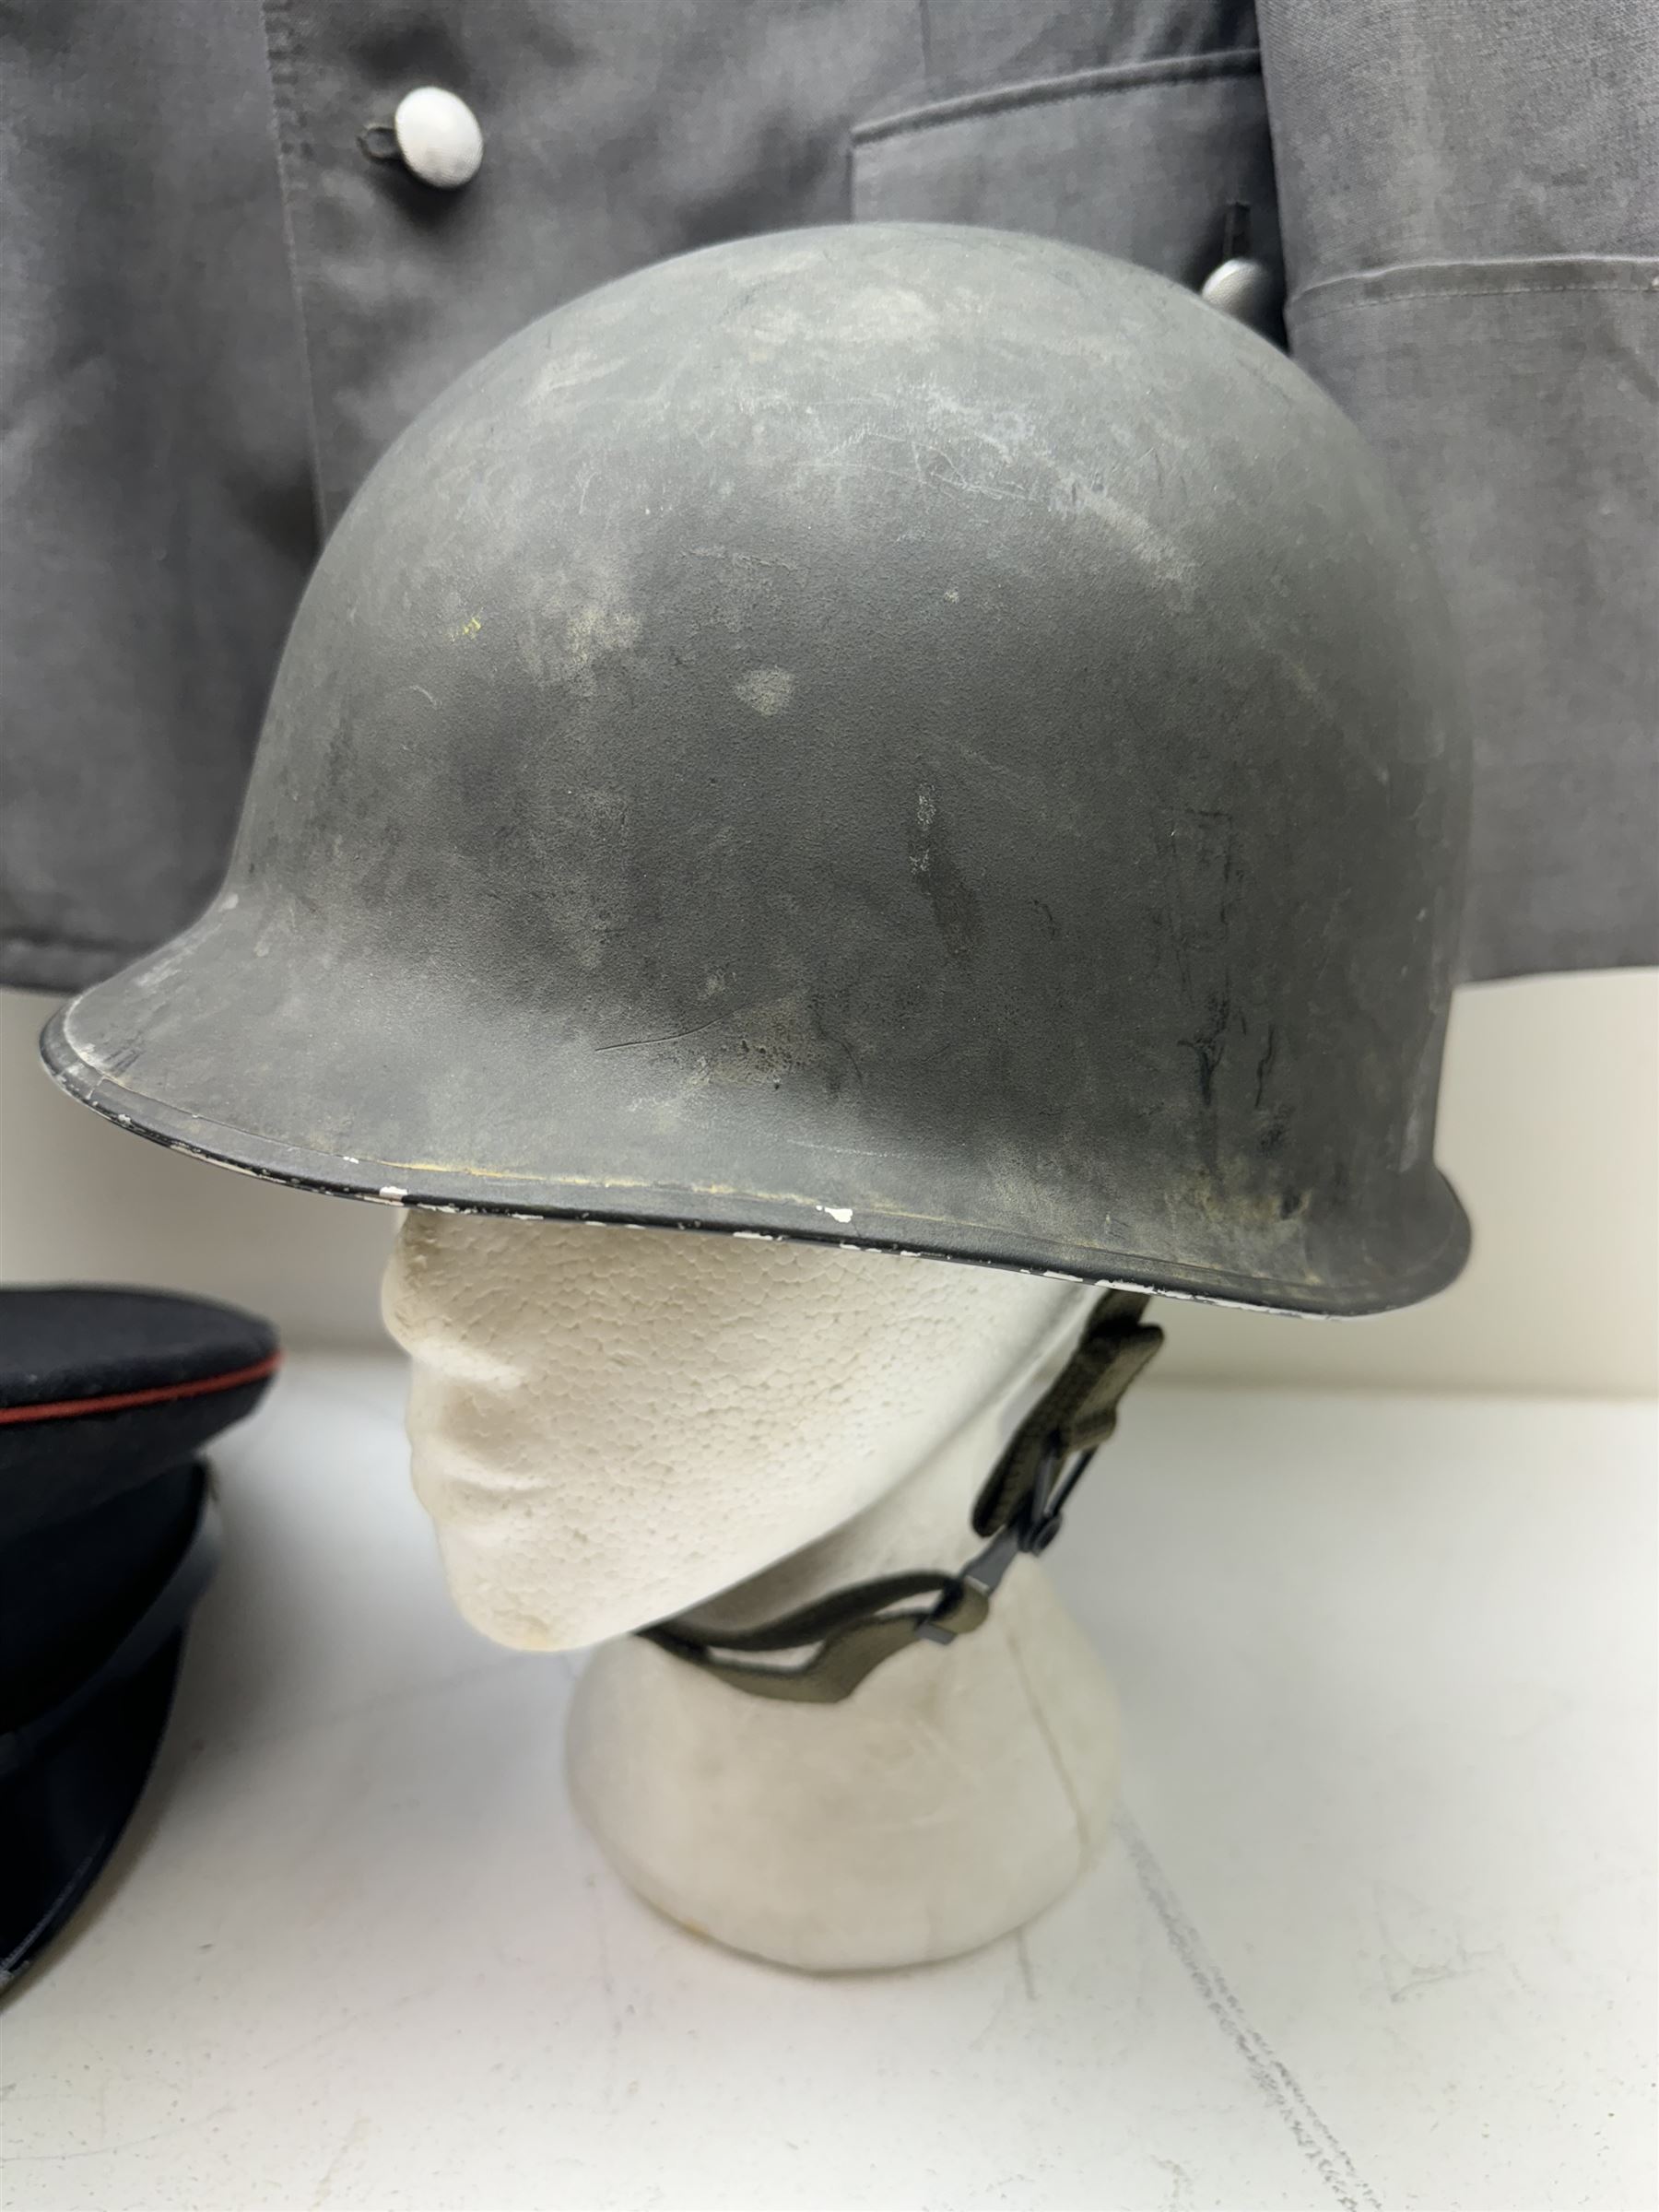 West German helmet steel helmet - Image 2 of 5